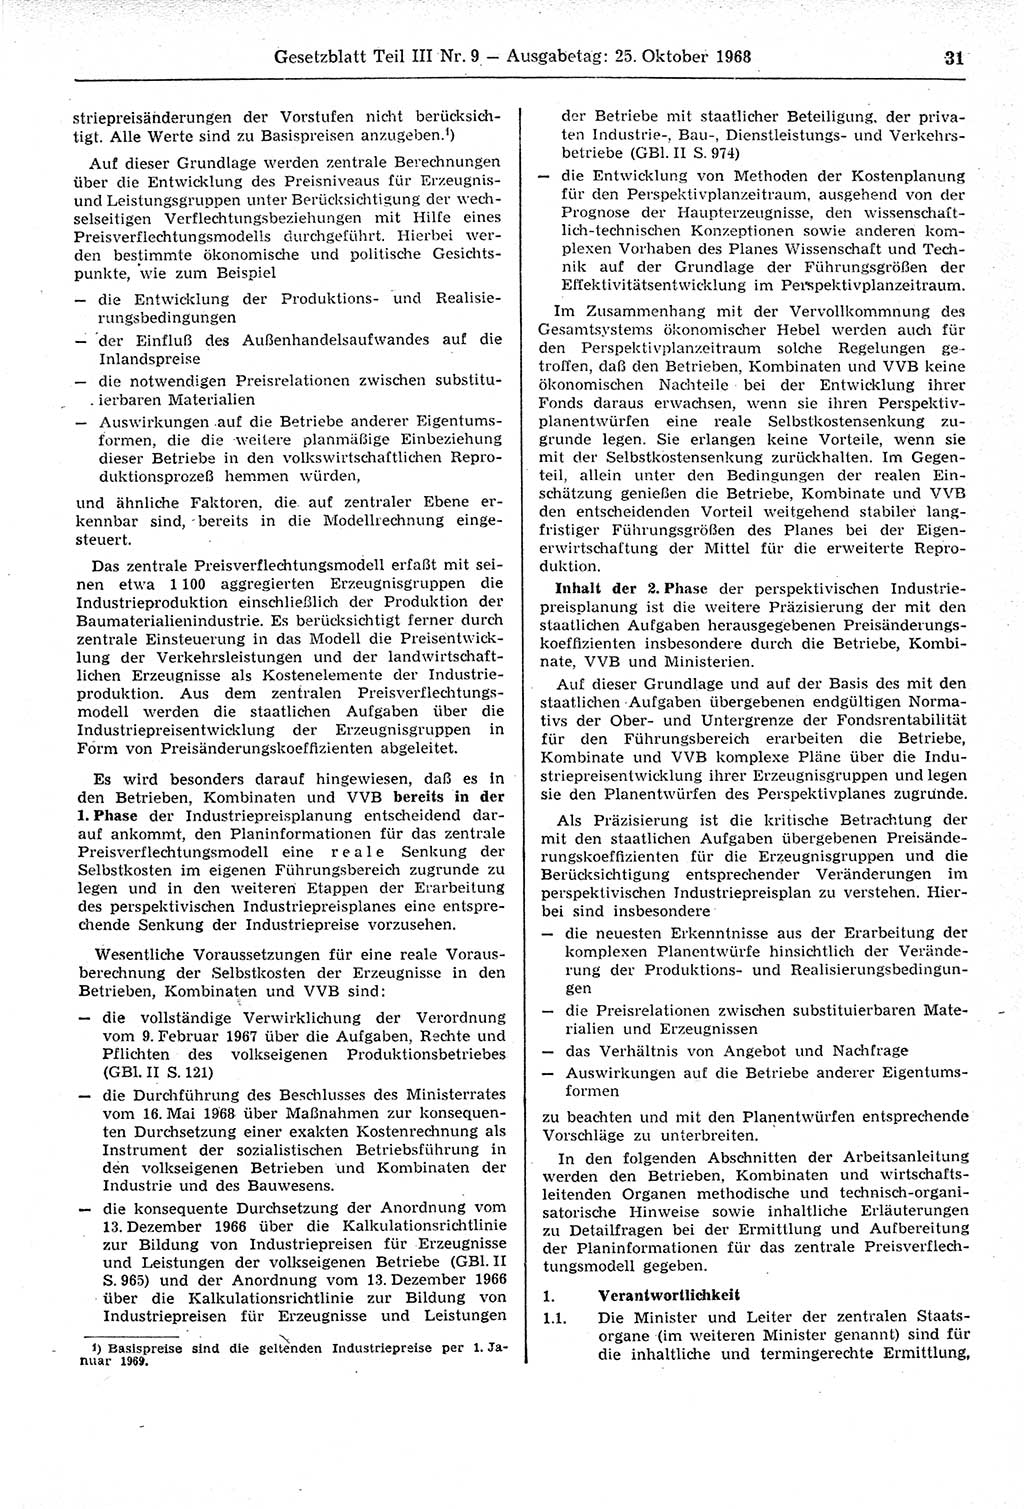 Gesetzblatt (GBl.) der Deutschen Demokratischen Republik (DDR) Teil ⅠⅠⅠ 1968, Seite 31 (GBl. DDR ⅠⅠⅠ 1968, S. 31)